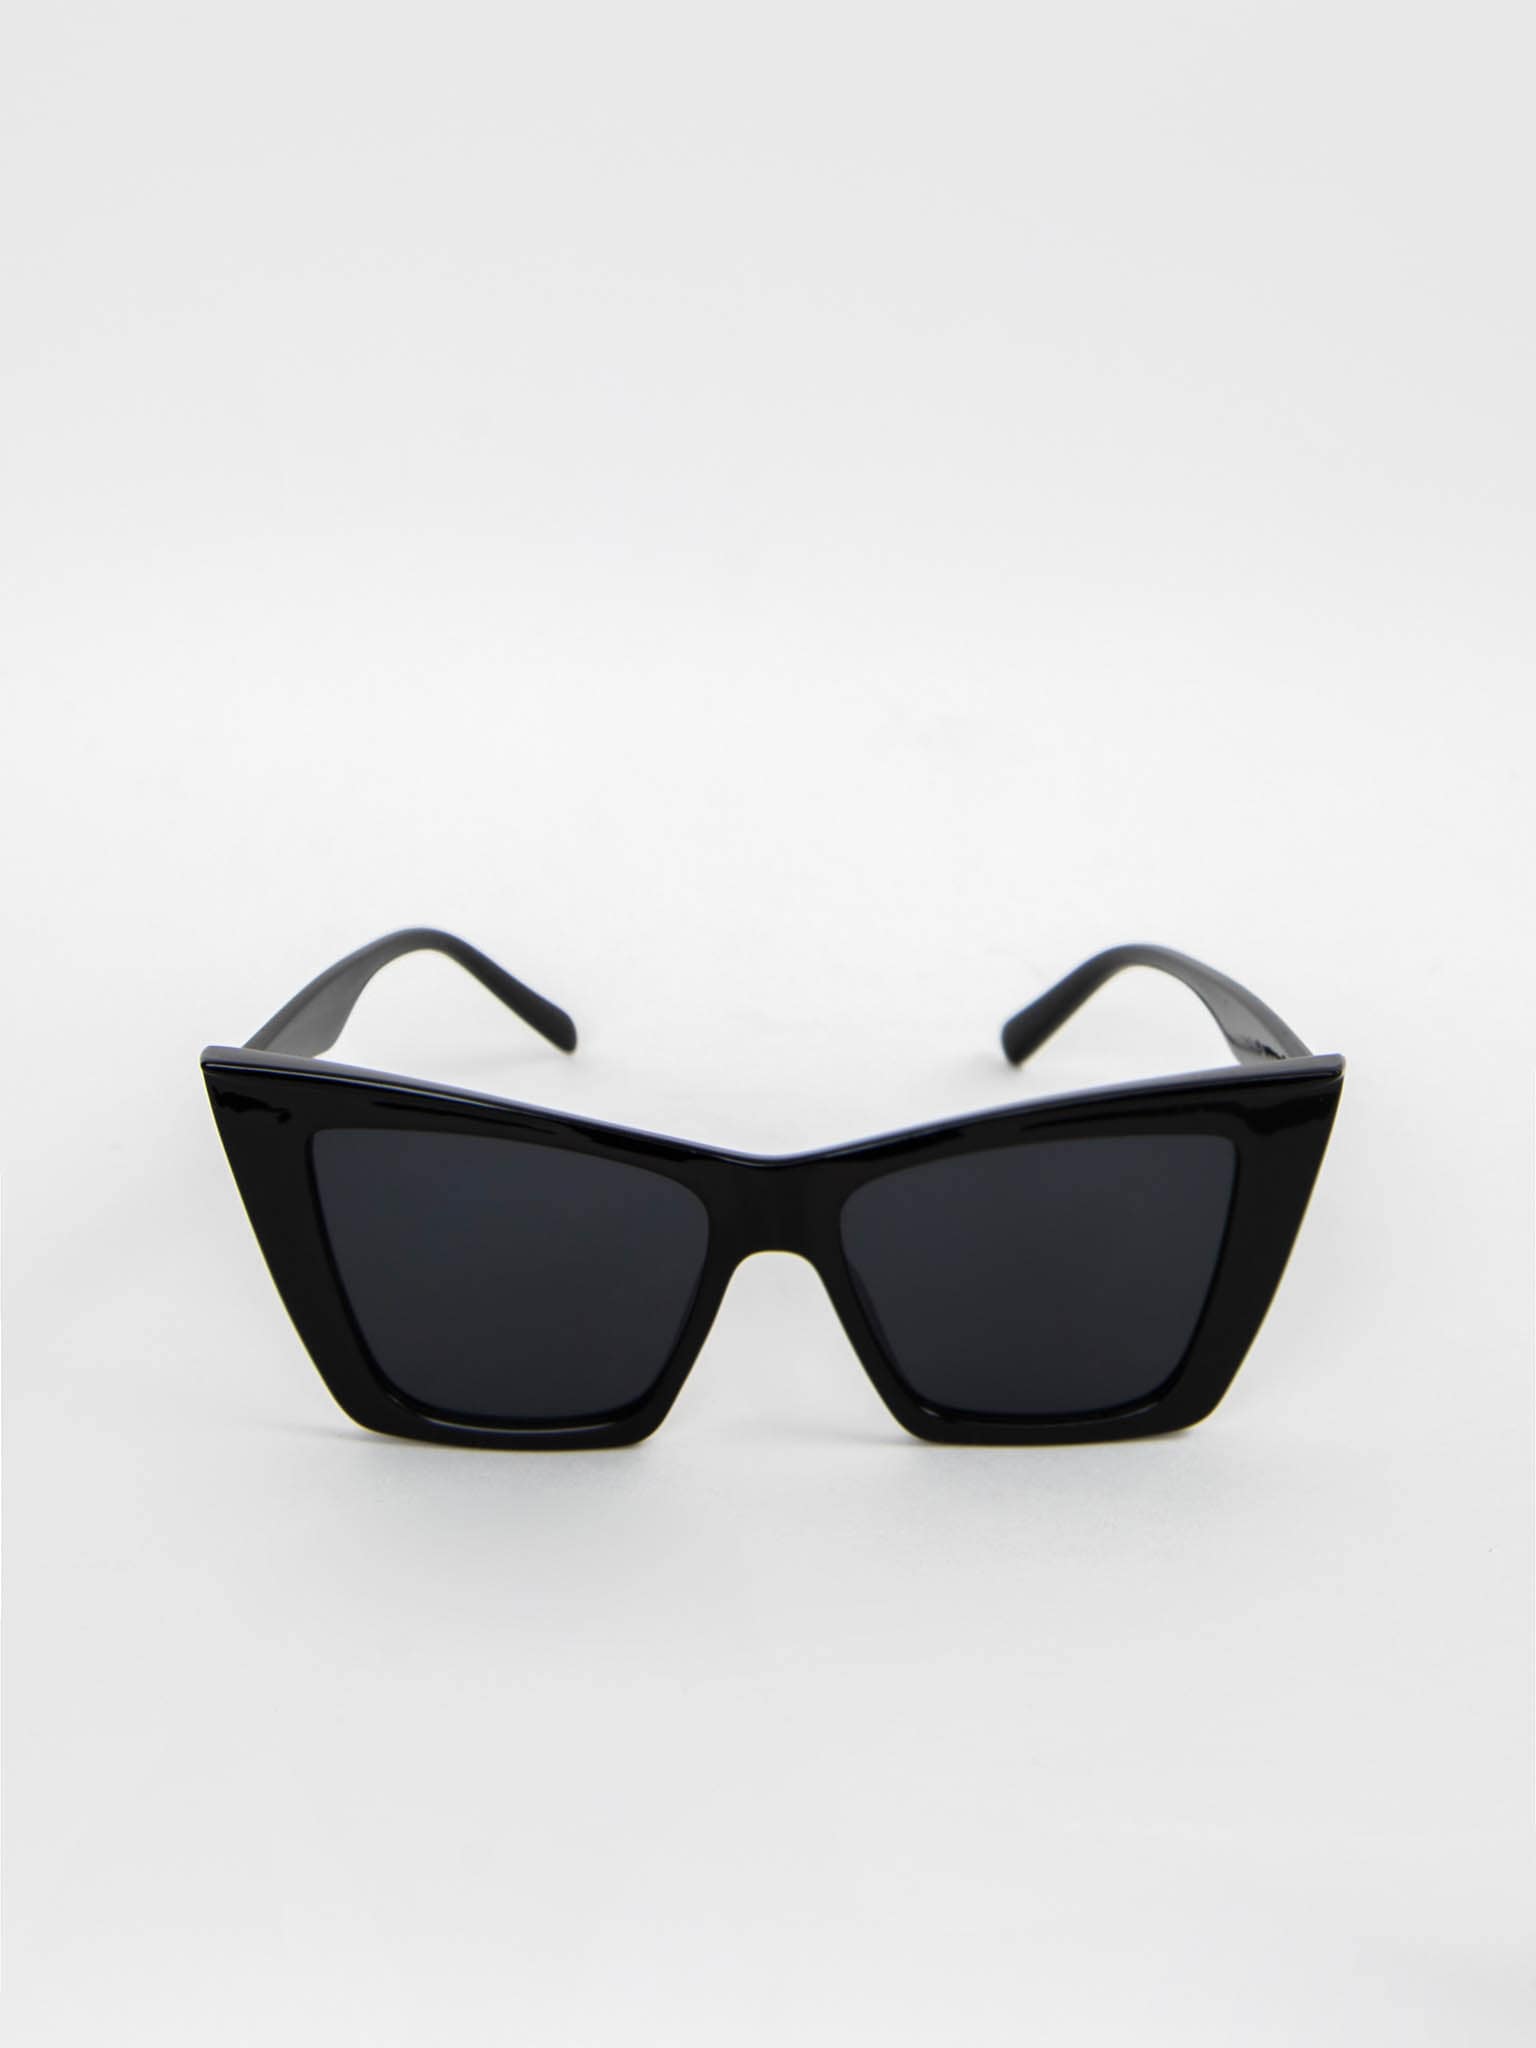 Angular cat-eye sunglasses